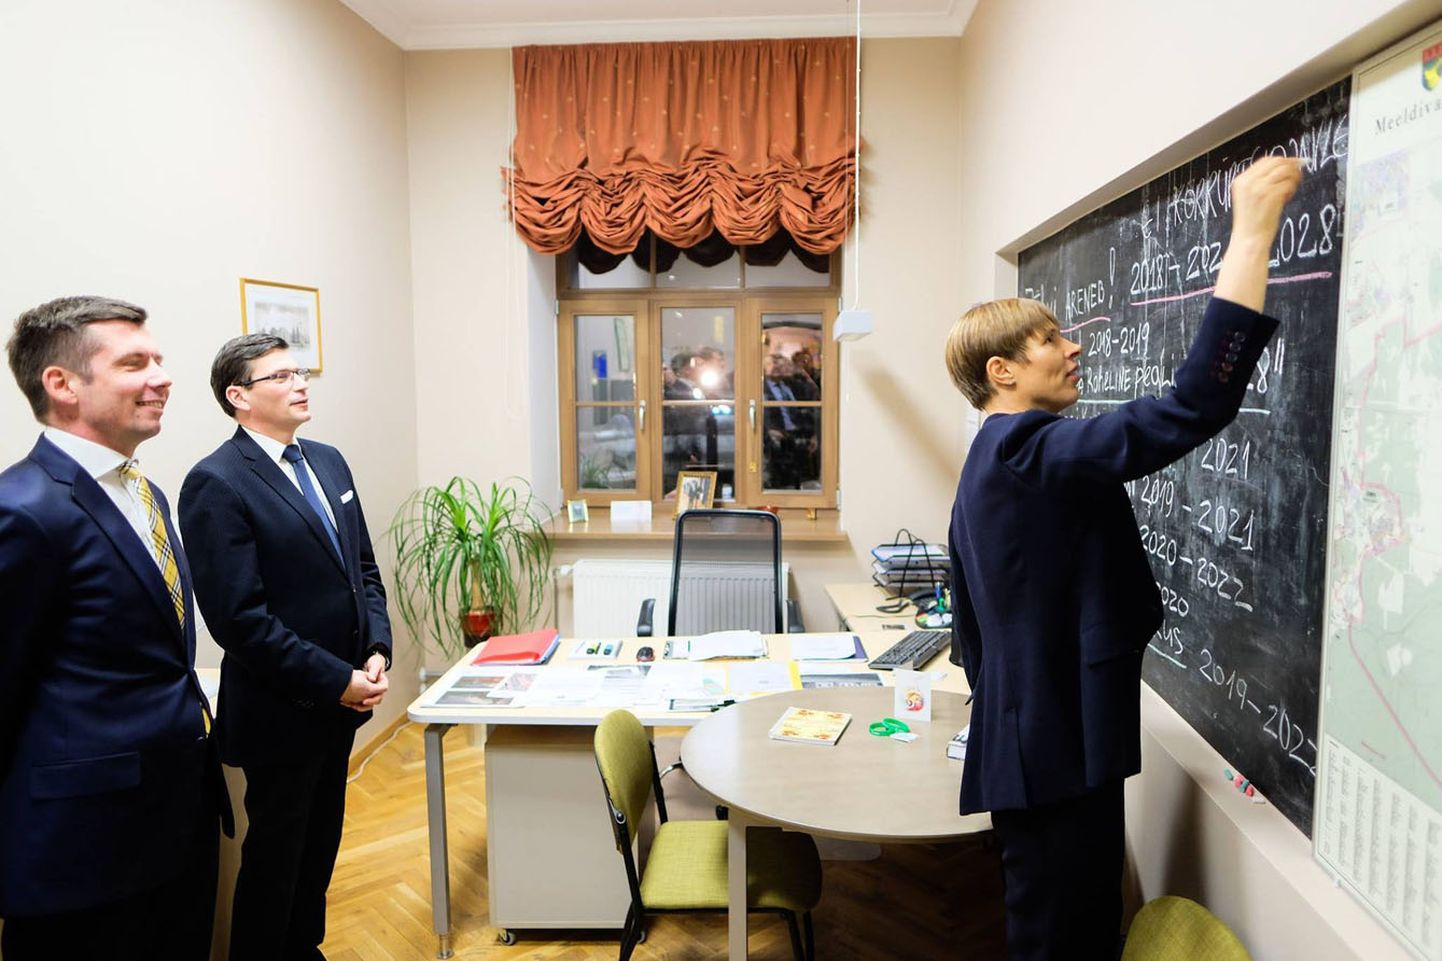 Pärast gümnaasiumi külastas Kaljulaid teisipäeval veel Ida-Virumaa kutsehariduskeskust, helitehnikatootjat Audes ning Jõhvi vallavalitsust. Seal kirjutas ta heade mõtete tahvlile "Ei korruptsioonile!". Ilmselt sai president selleks inspiratsiooni gümnaasiumis esitatud küsimusest, millal lõpetab valitsus korruptsiooni Kohtla-Järvel. Seda teadmata puhkes Facebookis arutelu, miks Kaljulaidil Jõhvis just selline mõte tekkis.

PRESIDENDI KANTSELEI